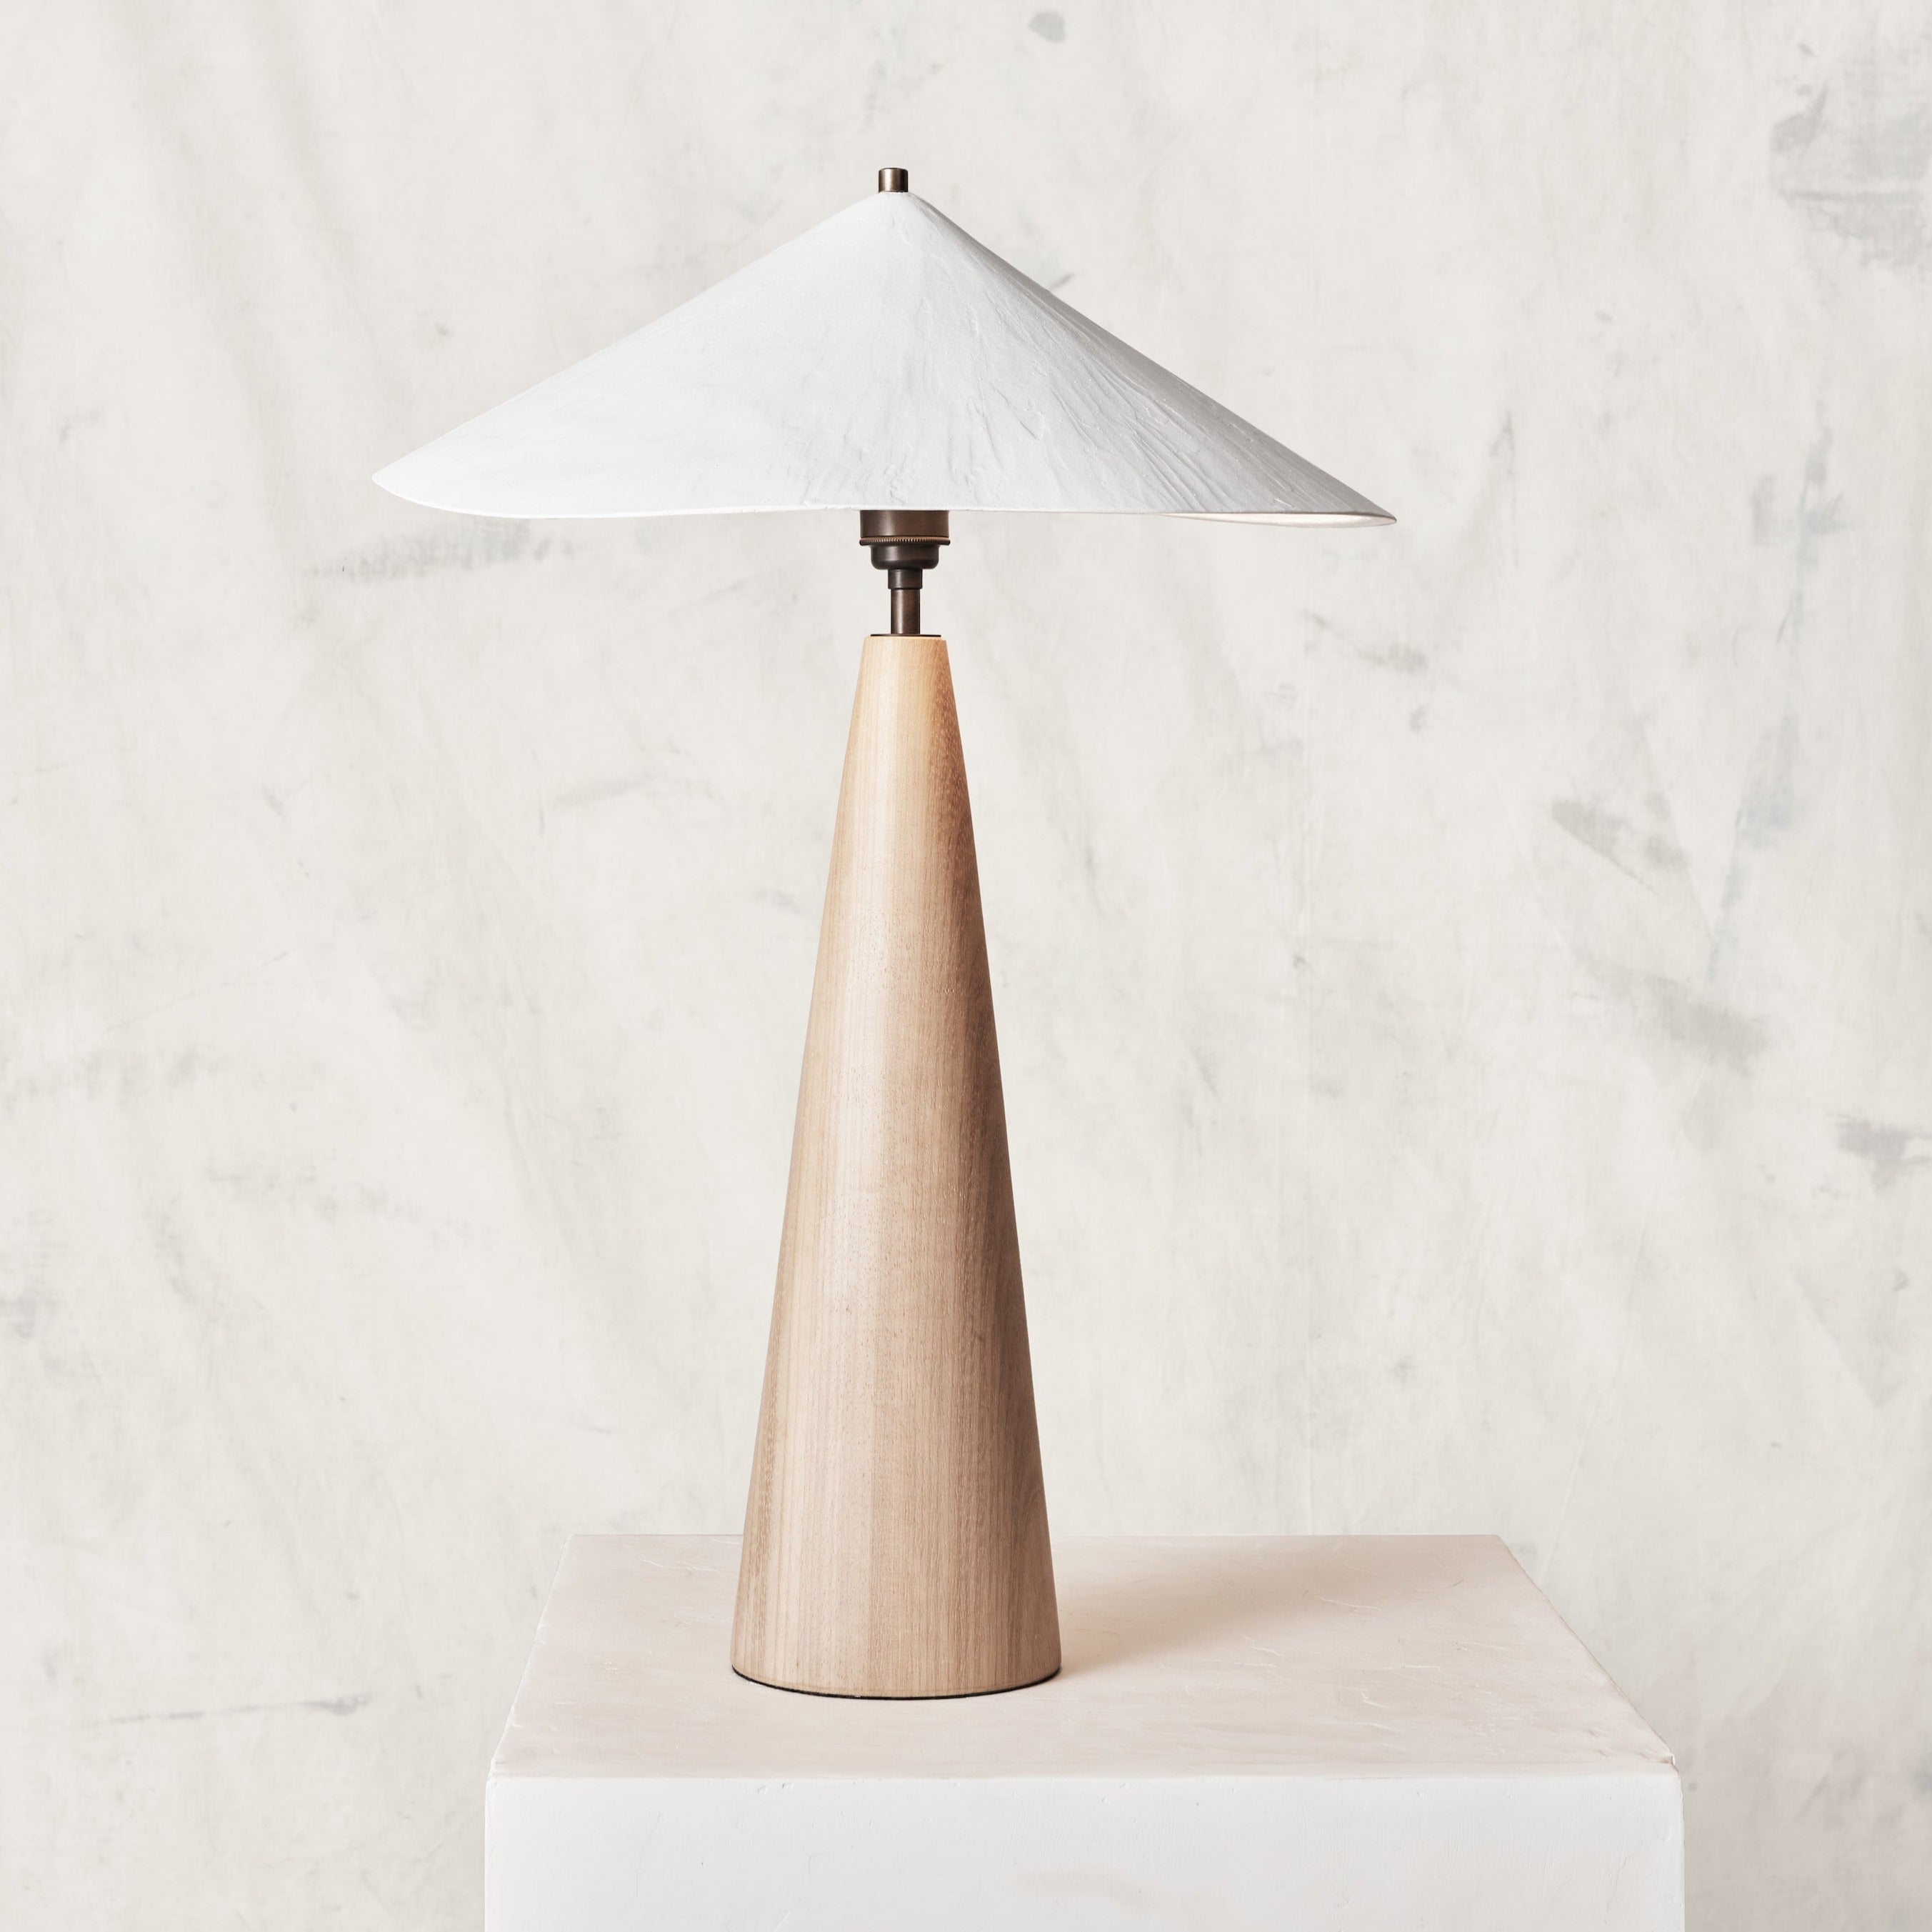 Wobble table lamp (light base)